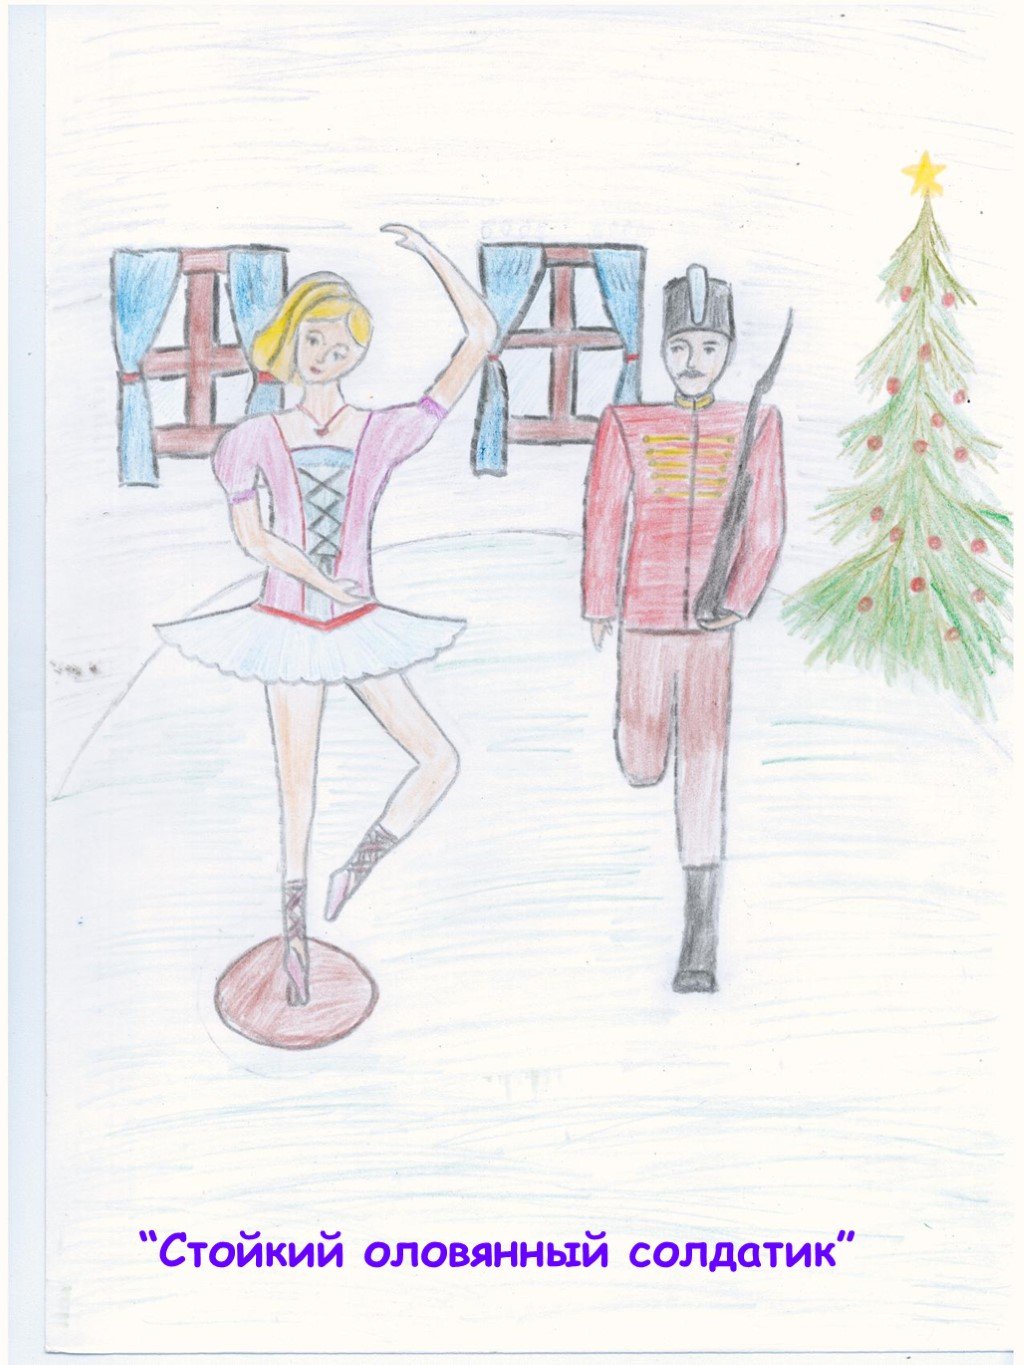 Иллюстрация к сказке стойкий оловянный солдатик 4 класс